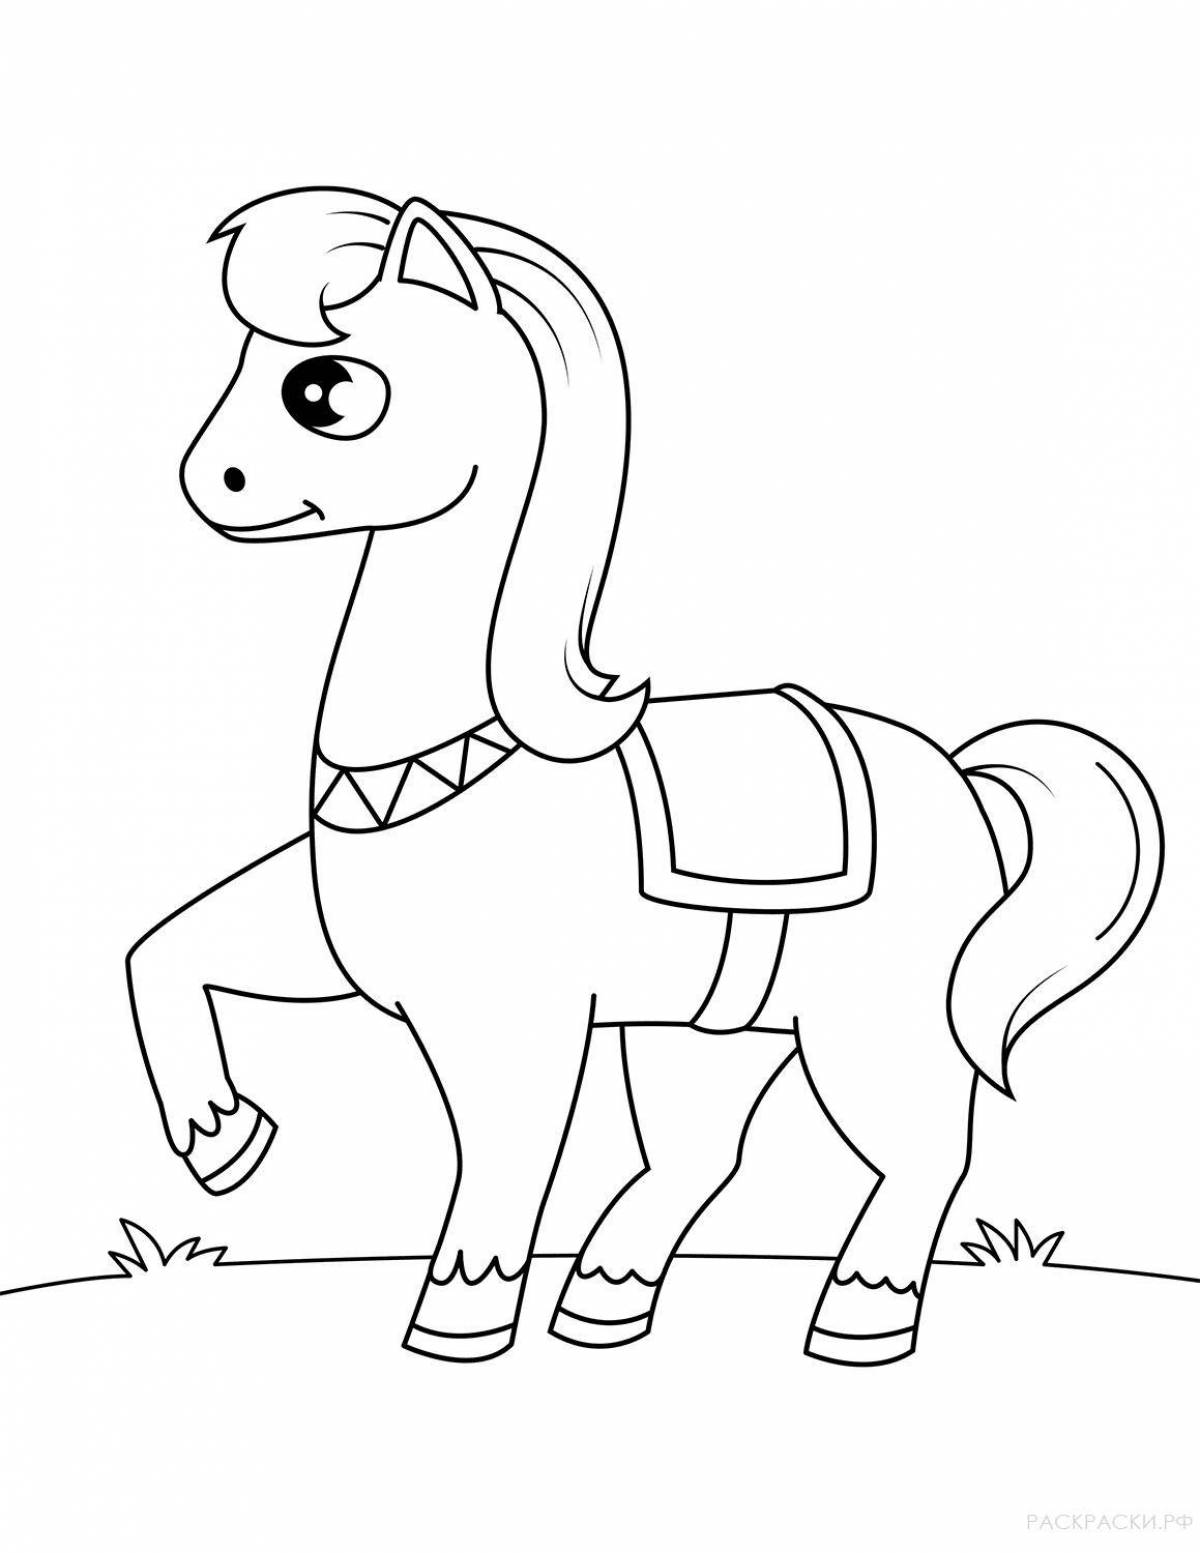 Чудесная раскраска лошадь для детей 4-5 лет